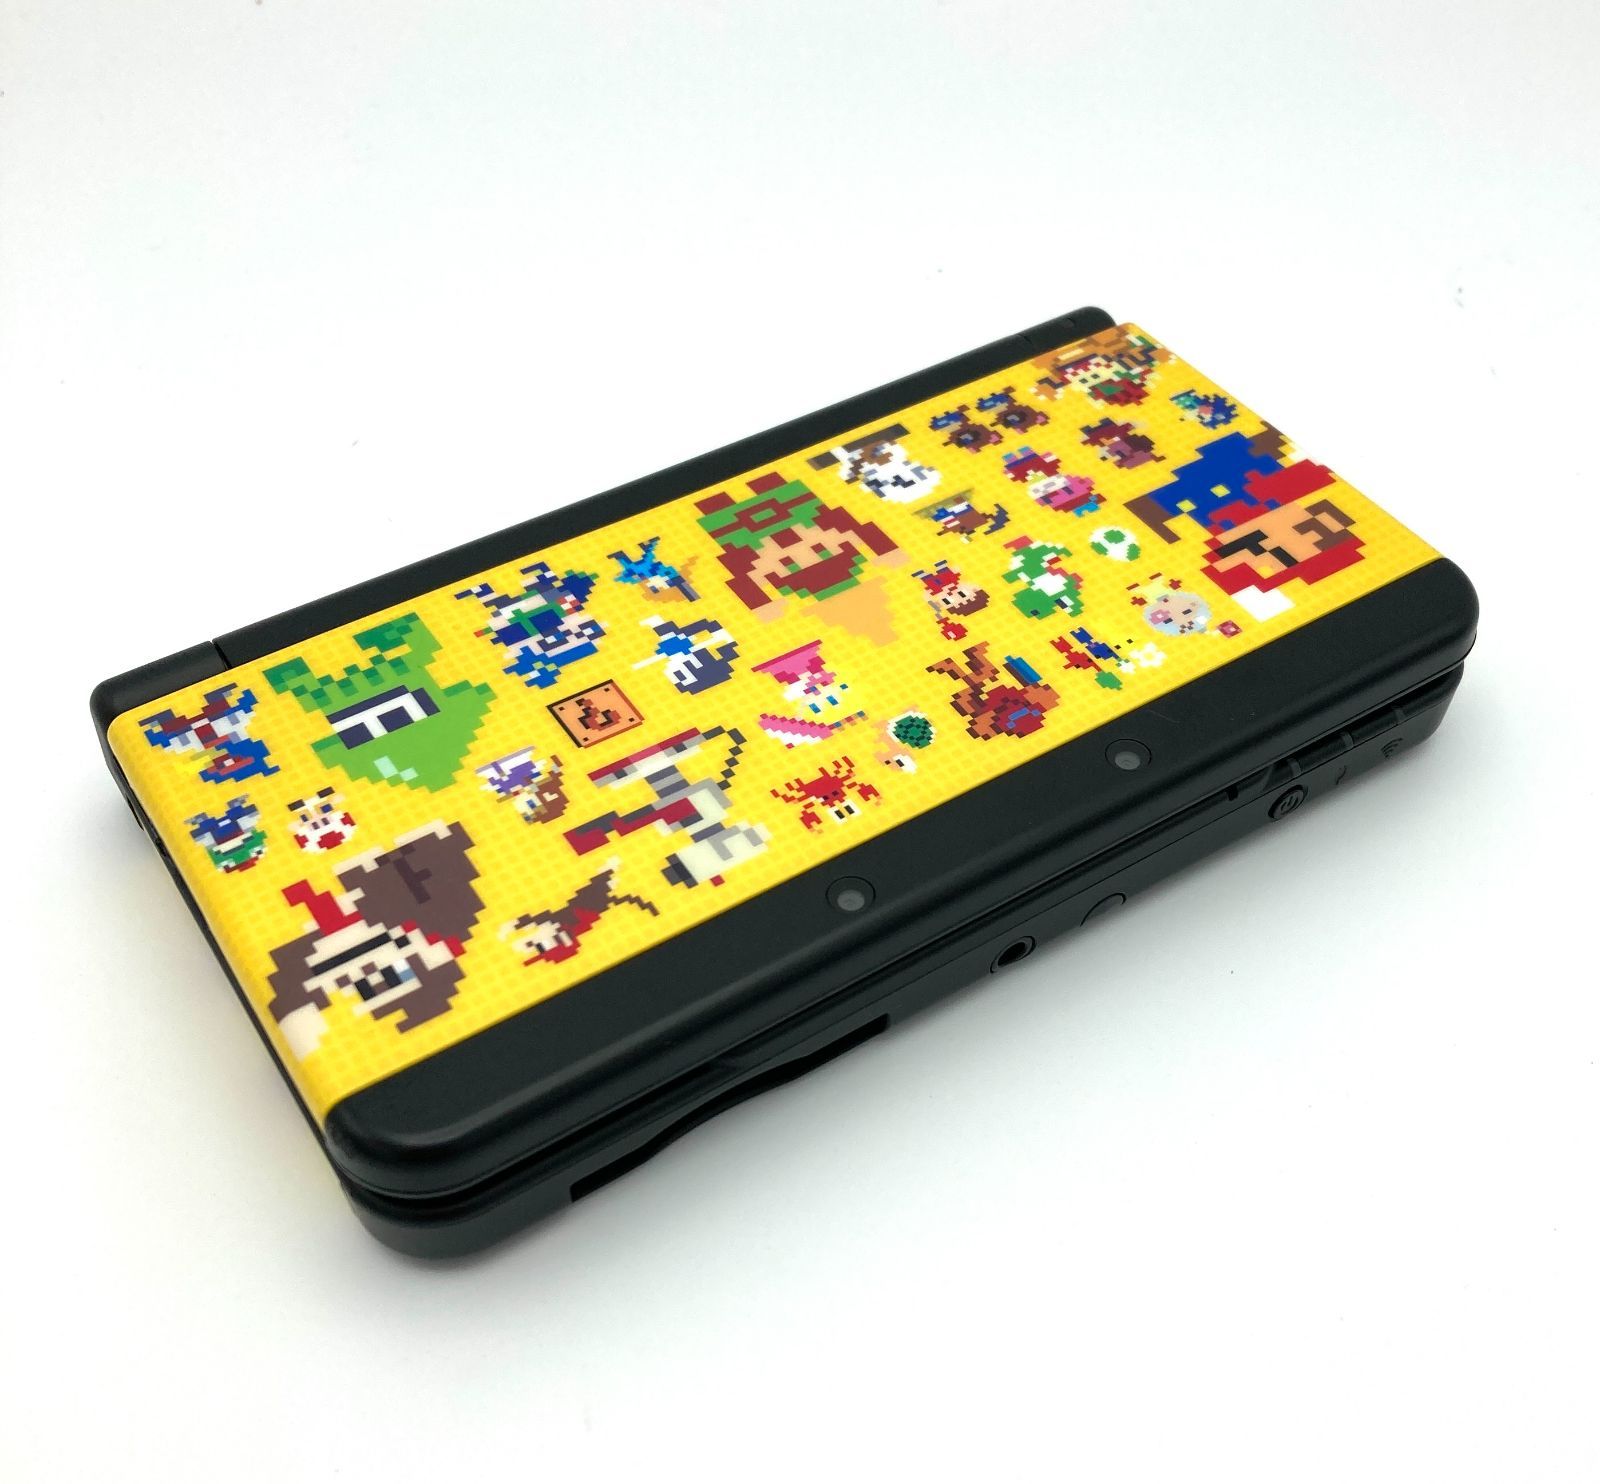 【限定品】任天堂3DS きせかえプレートパック スーパーマリオメーカーデザイン